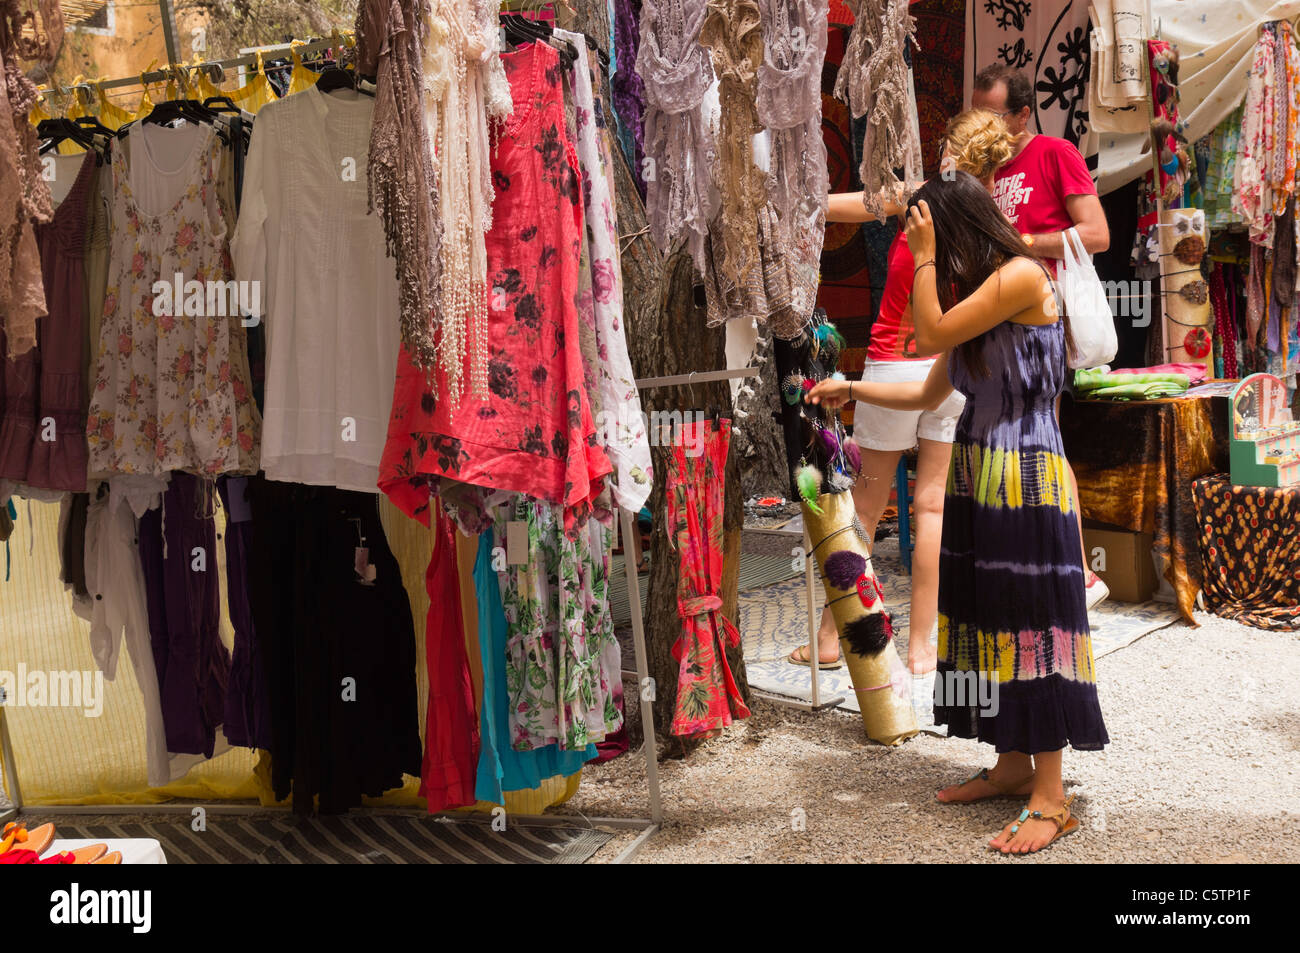 Ibiza, Balearen, Spanien - der Hippiemarkt am Punta Arabi an der Ostküste. Kleider. Stockfoto